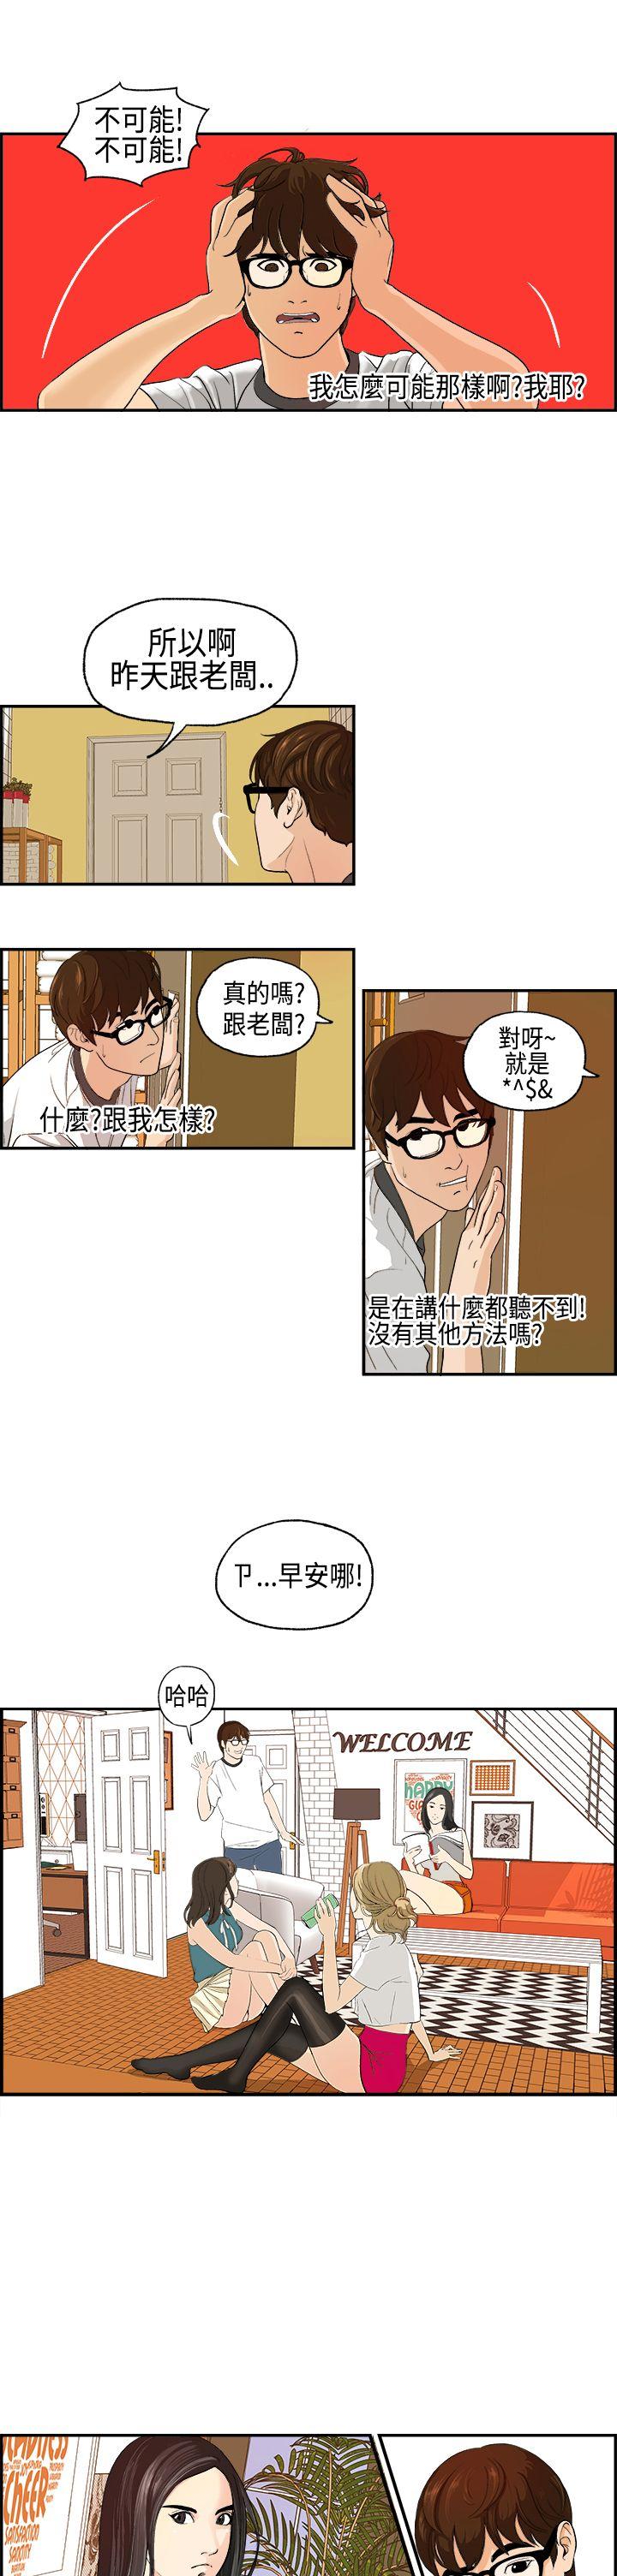 韩国污漫画 激情分享屋(完結) 第2话 7